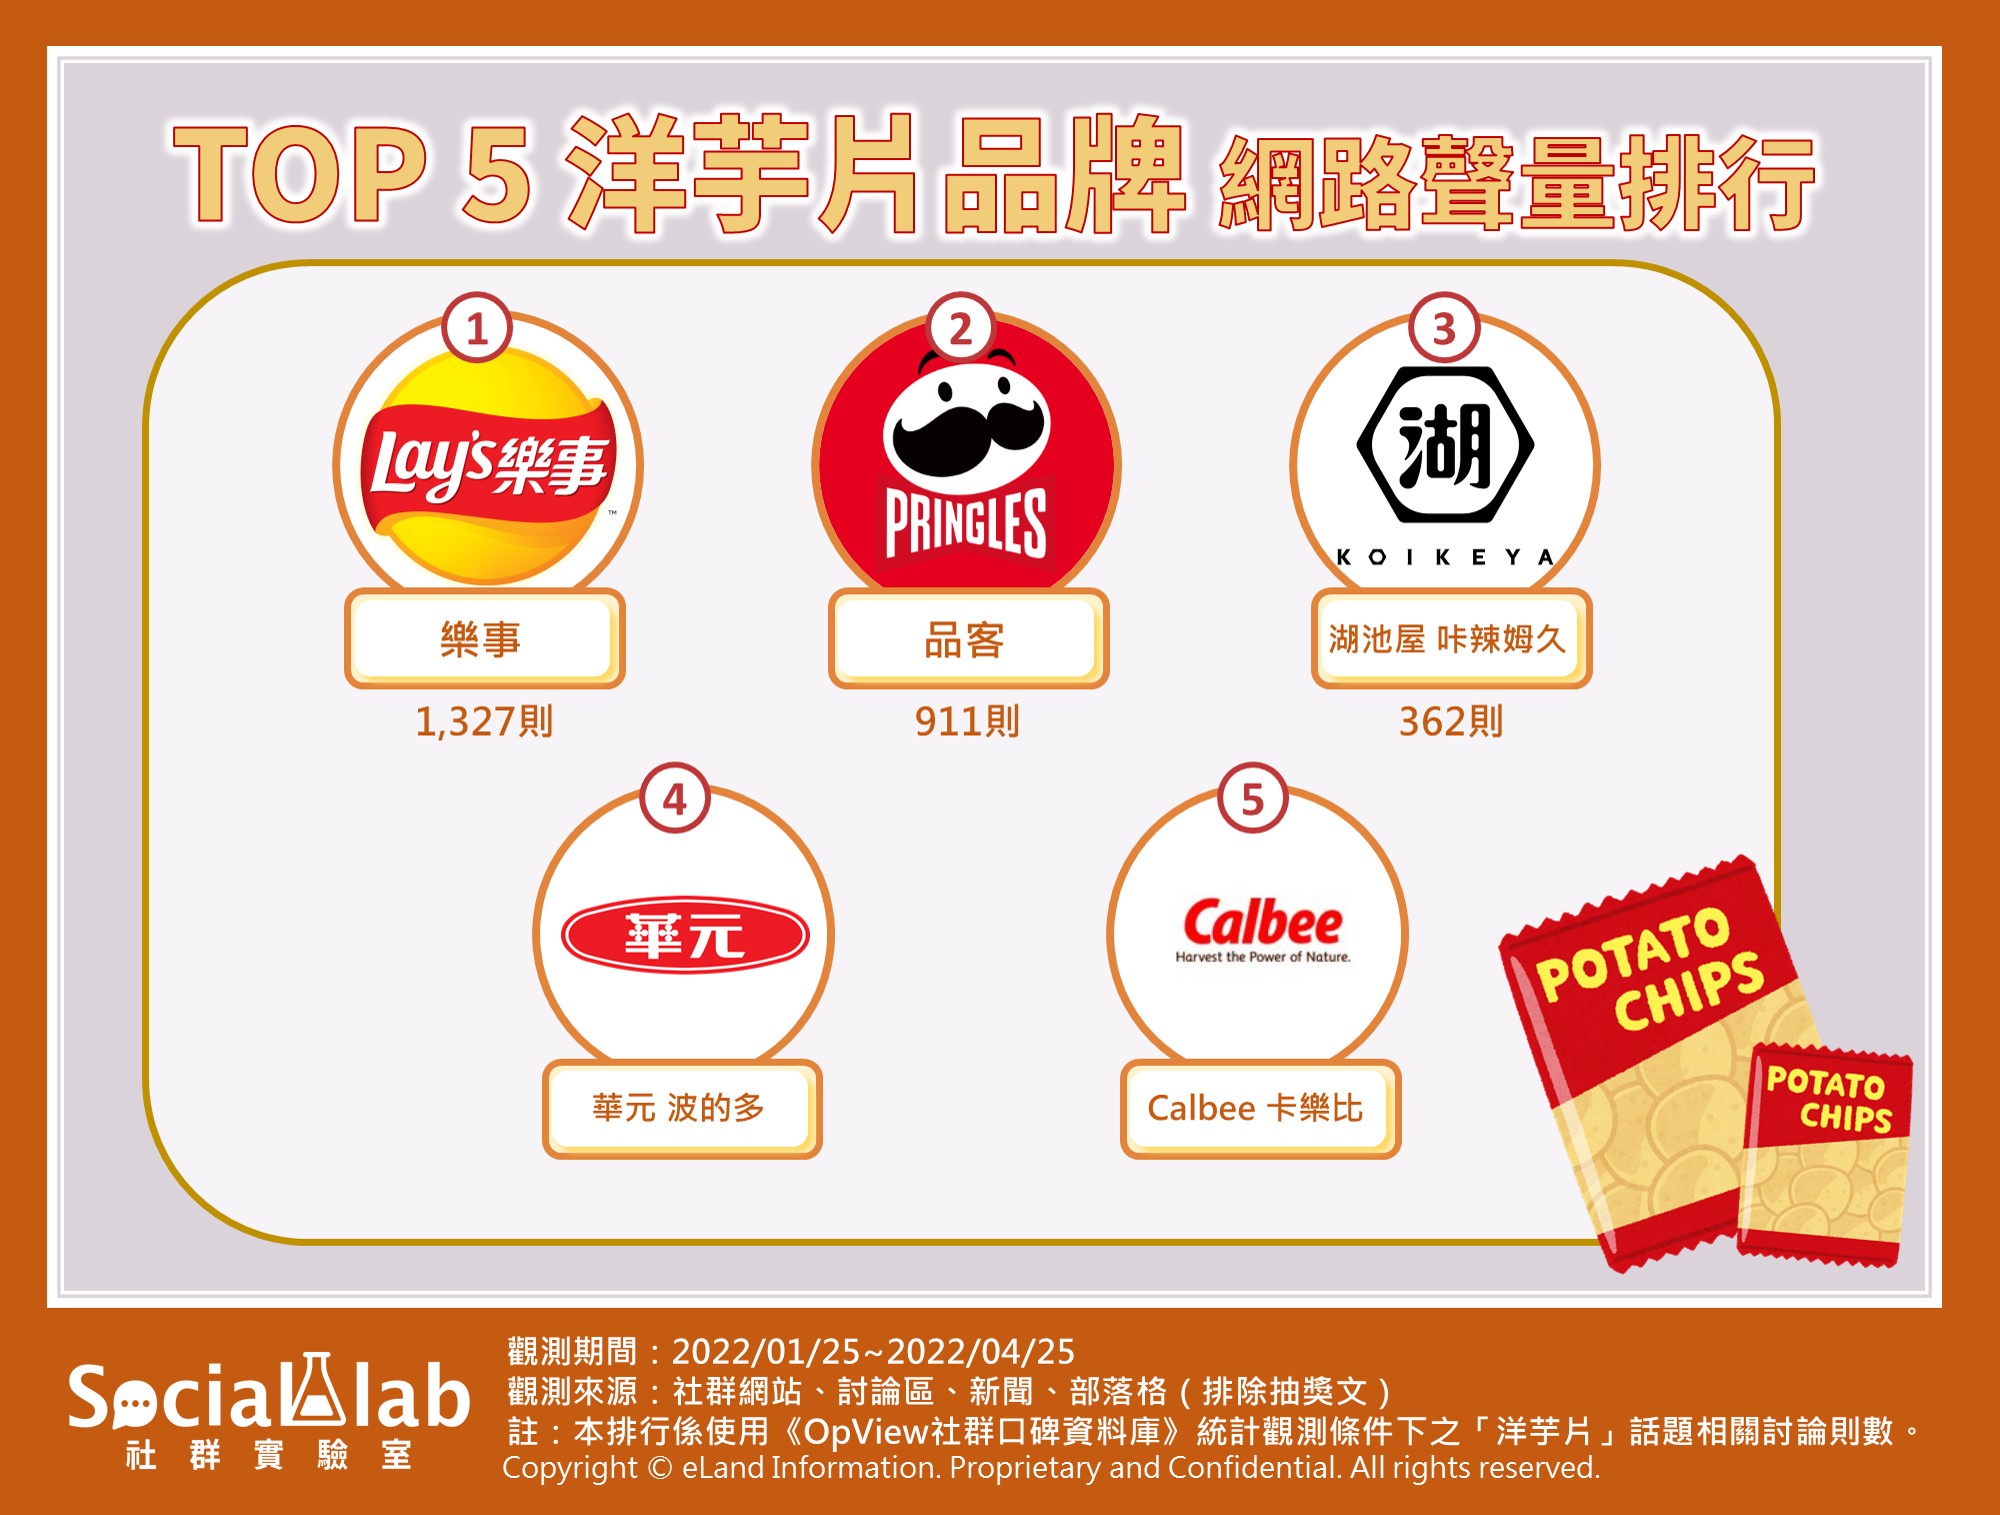 TOP5洋芋片品牌 網路聲量排行